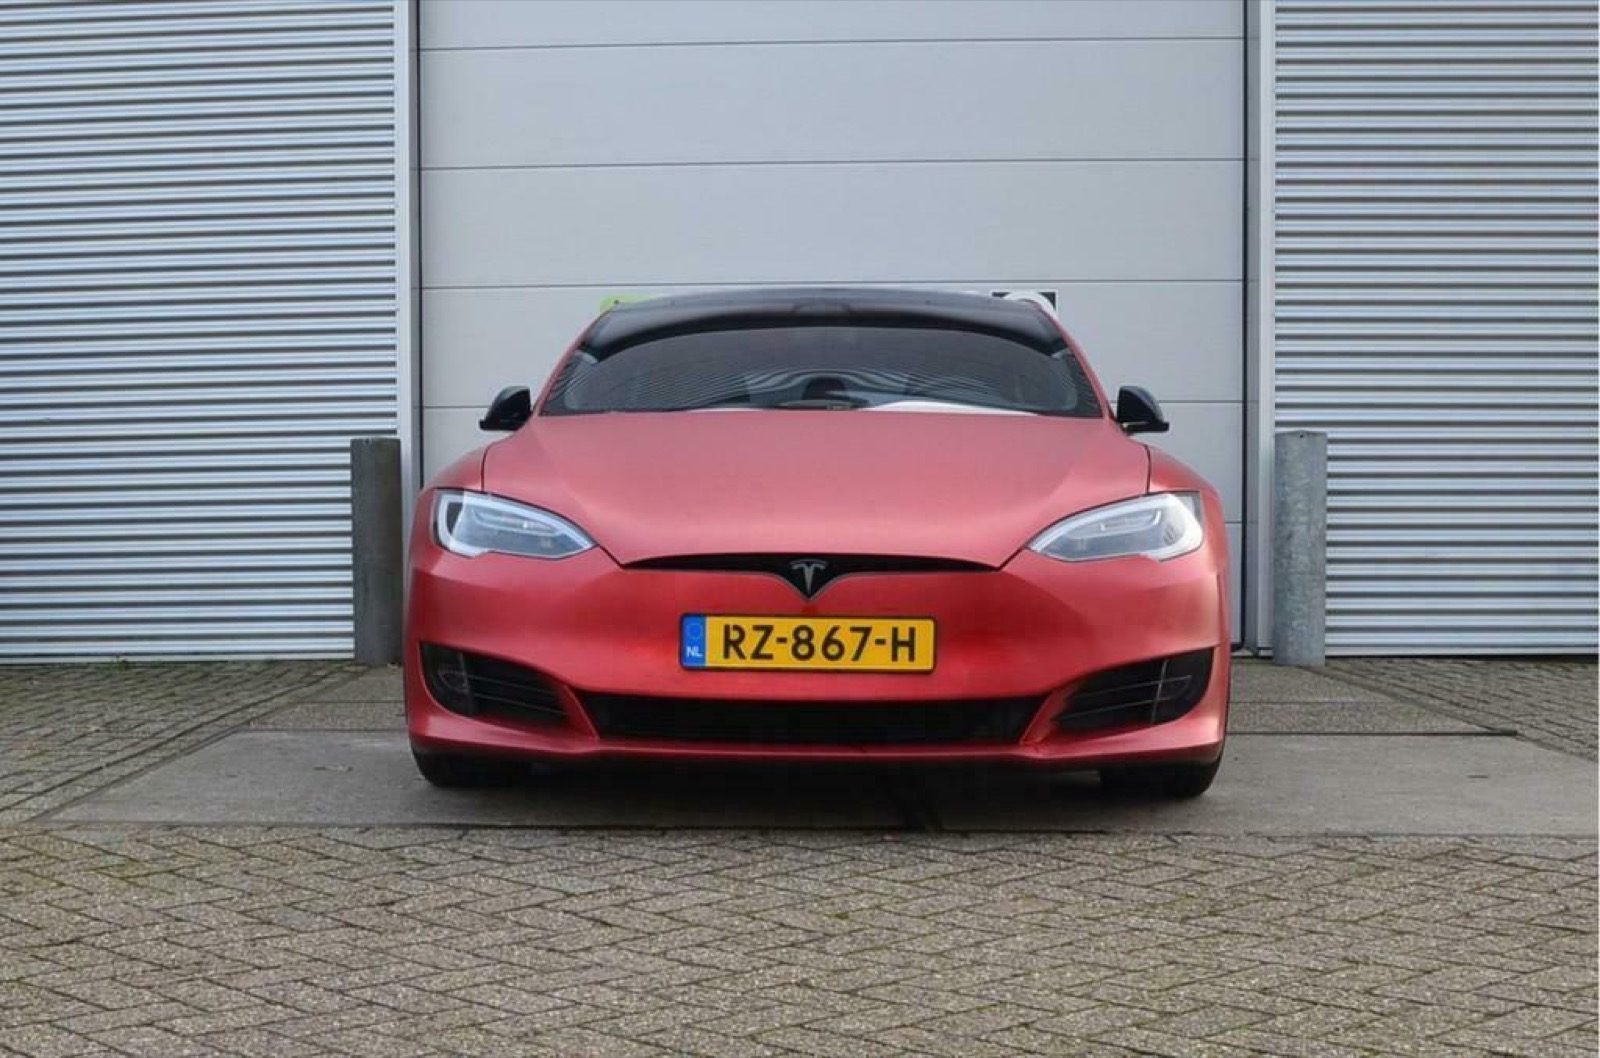 versterking Sentimenteel een 2 jaar oude Model S is 25k duurder dan een nieuwe! - Autoblog.nl